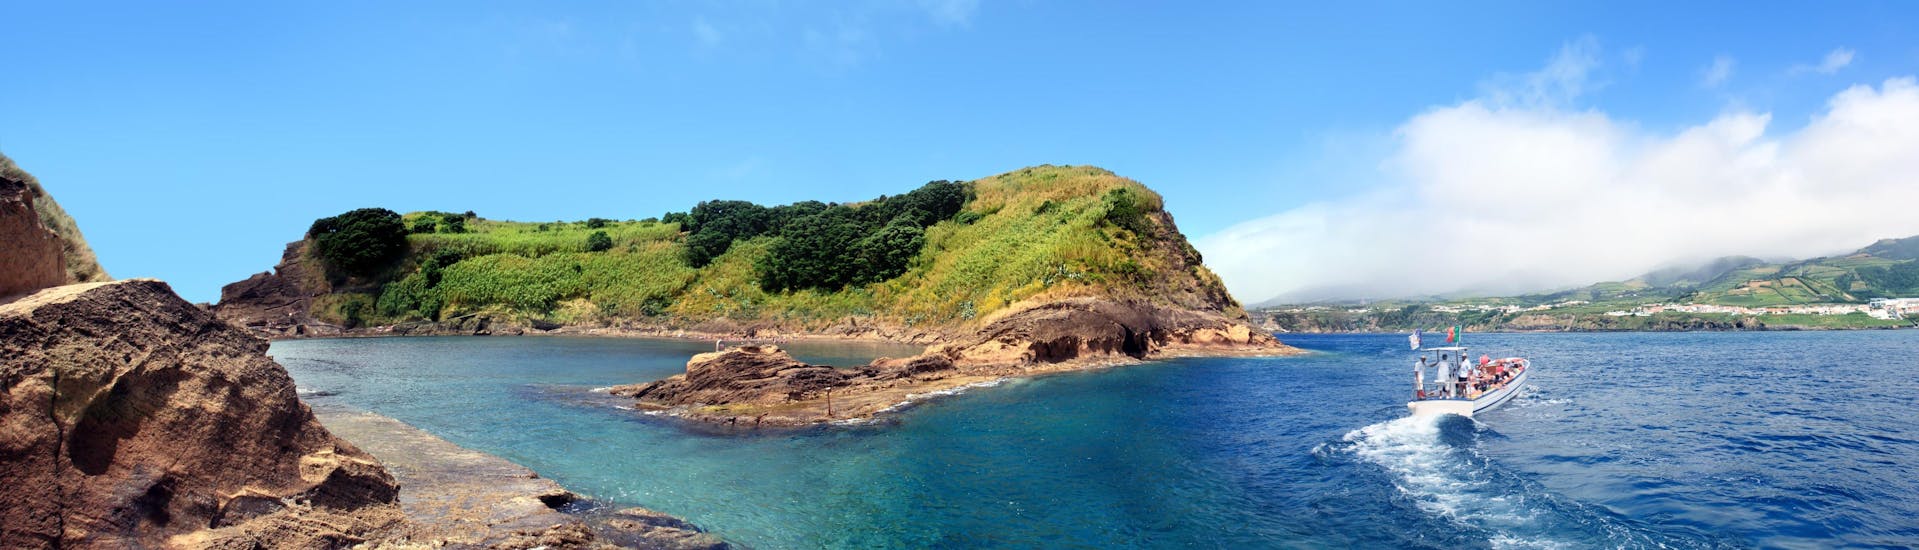 Uitzicht op het eilandje Vila Franca do Campo, een populaire bestemming voor boottochten op de Azoren.